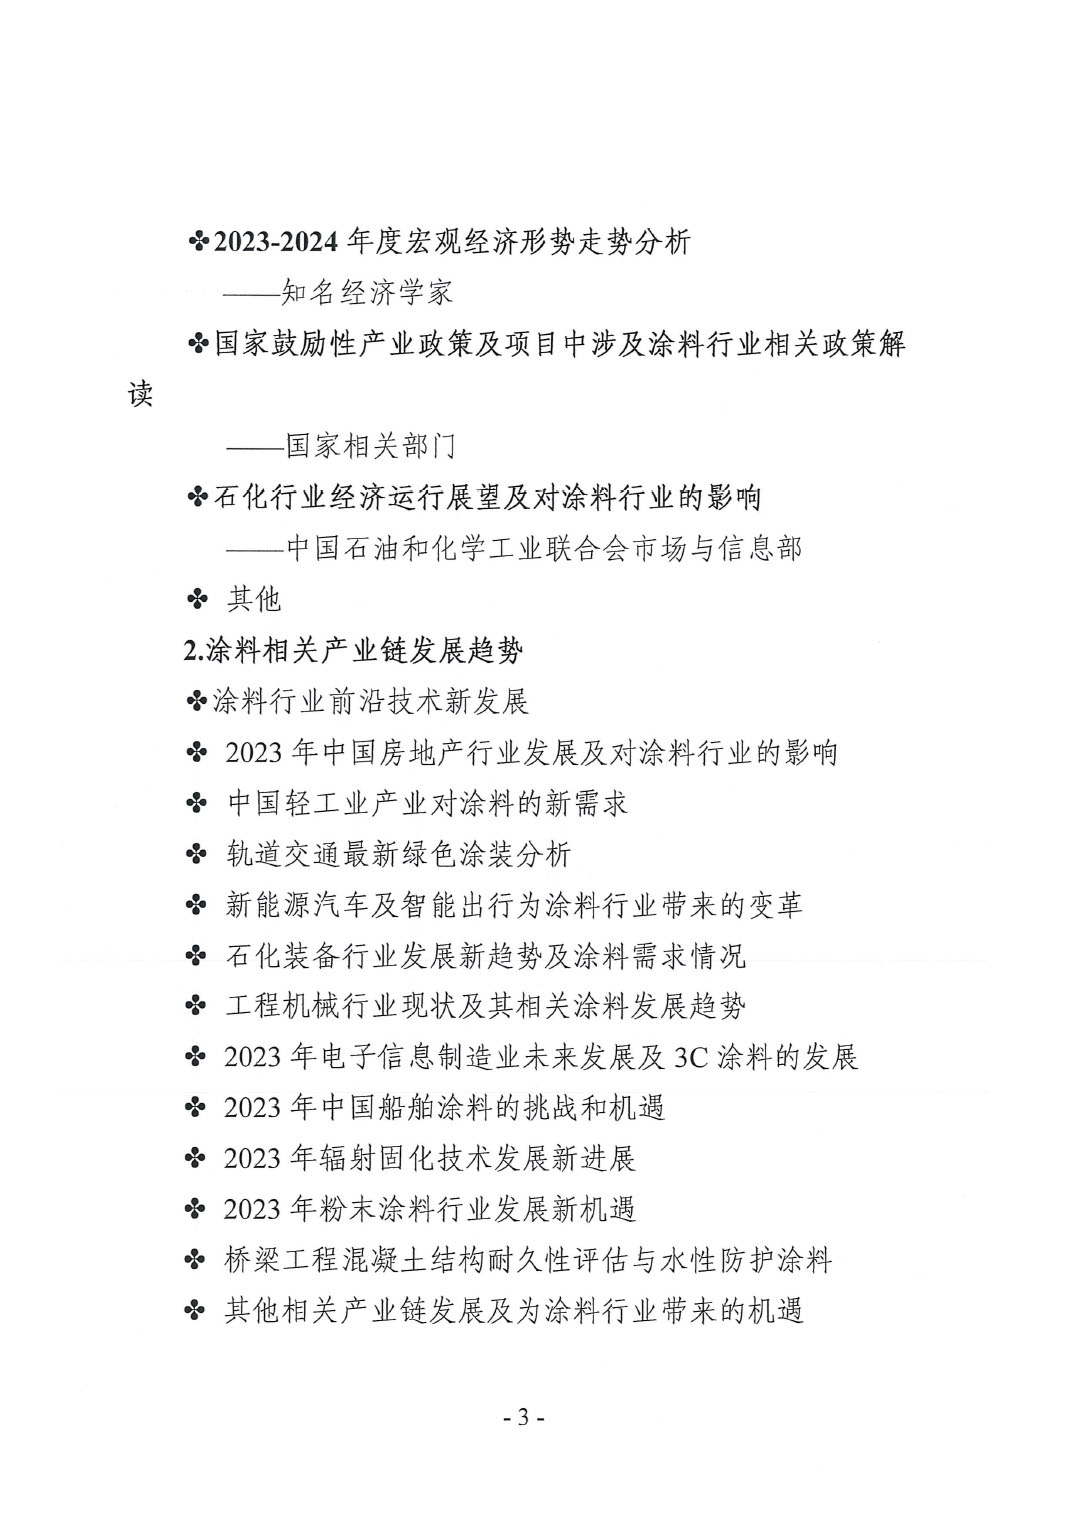 2023年中国涂料工业信息年会预通知（发文版）-3